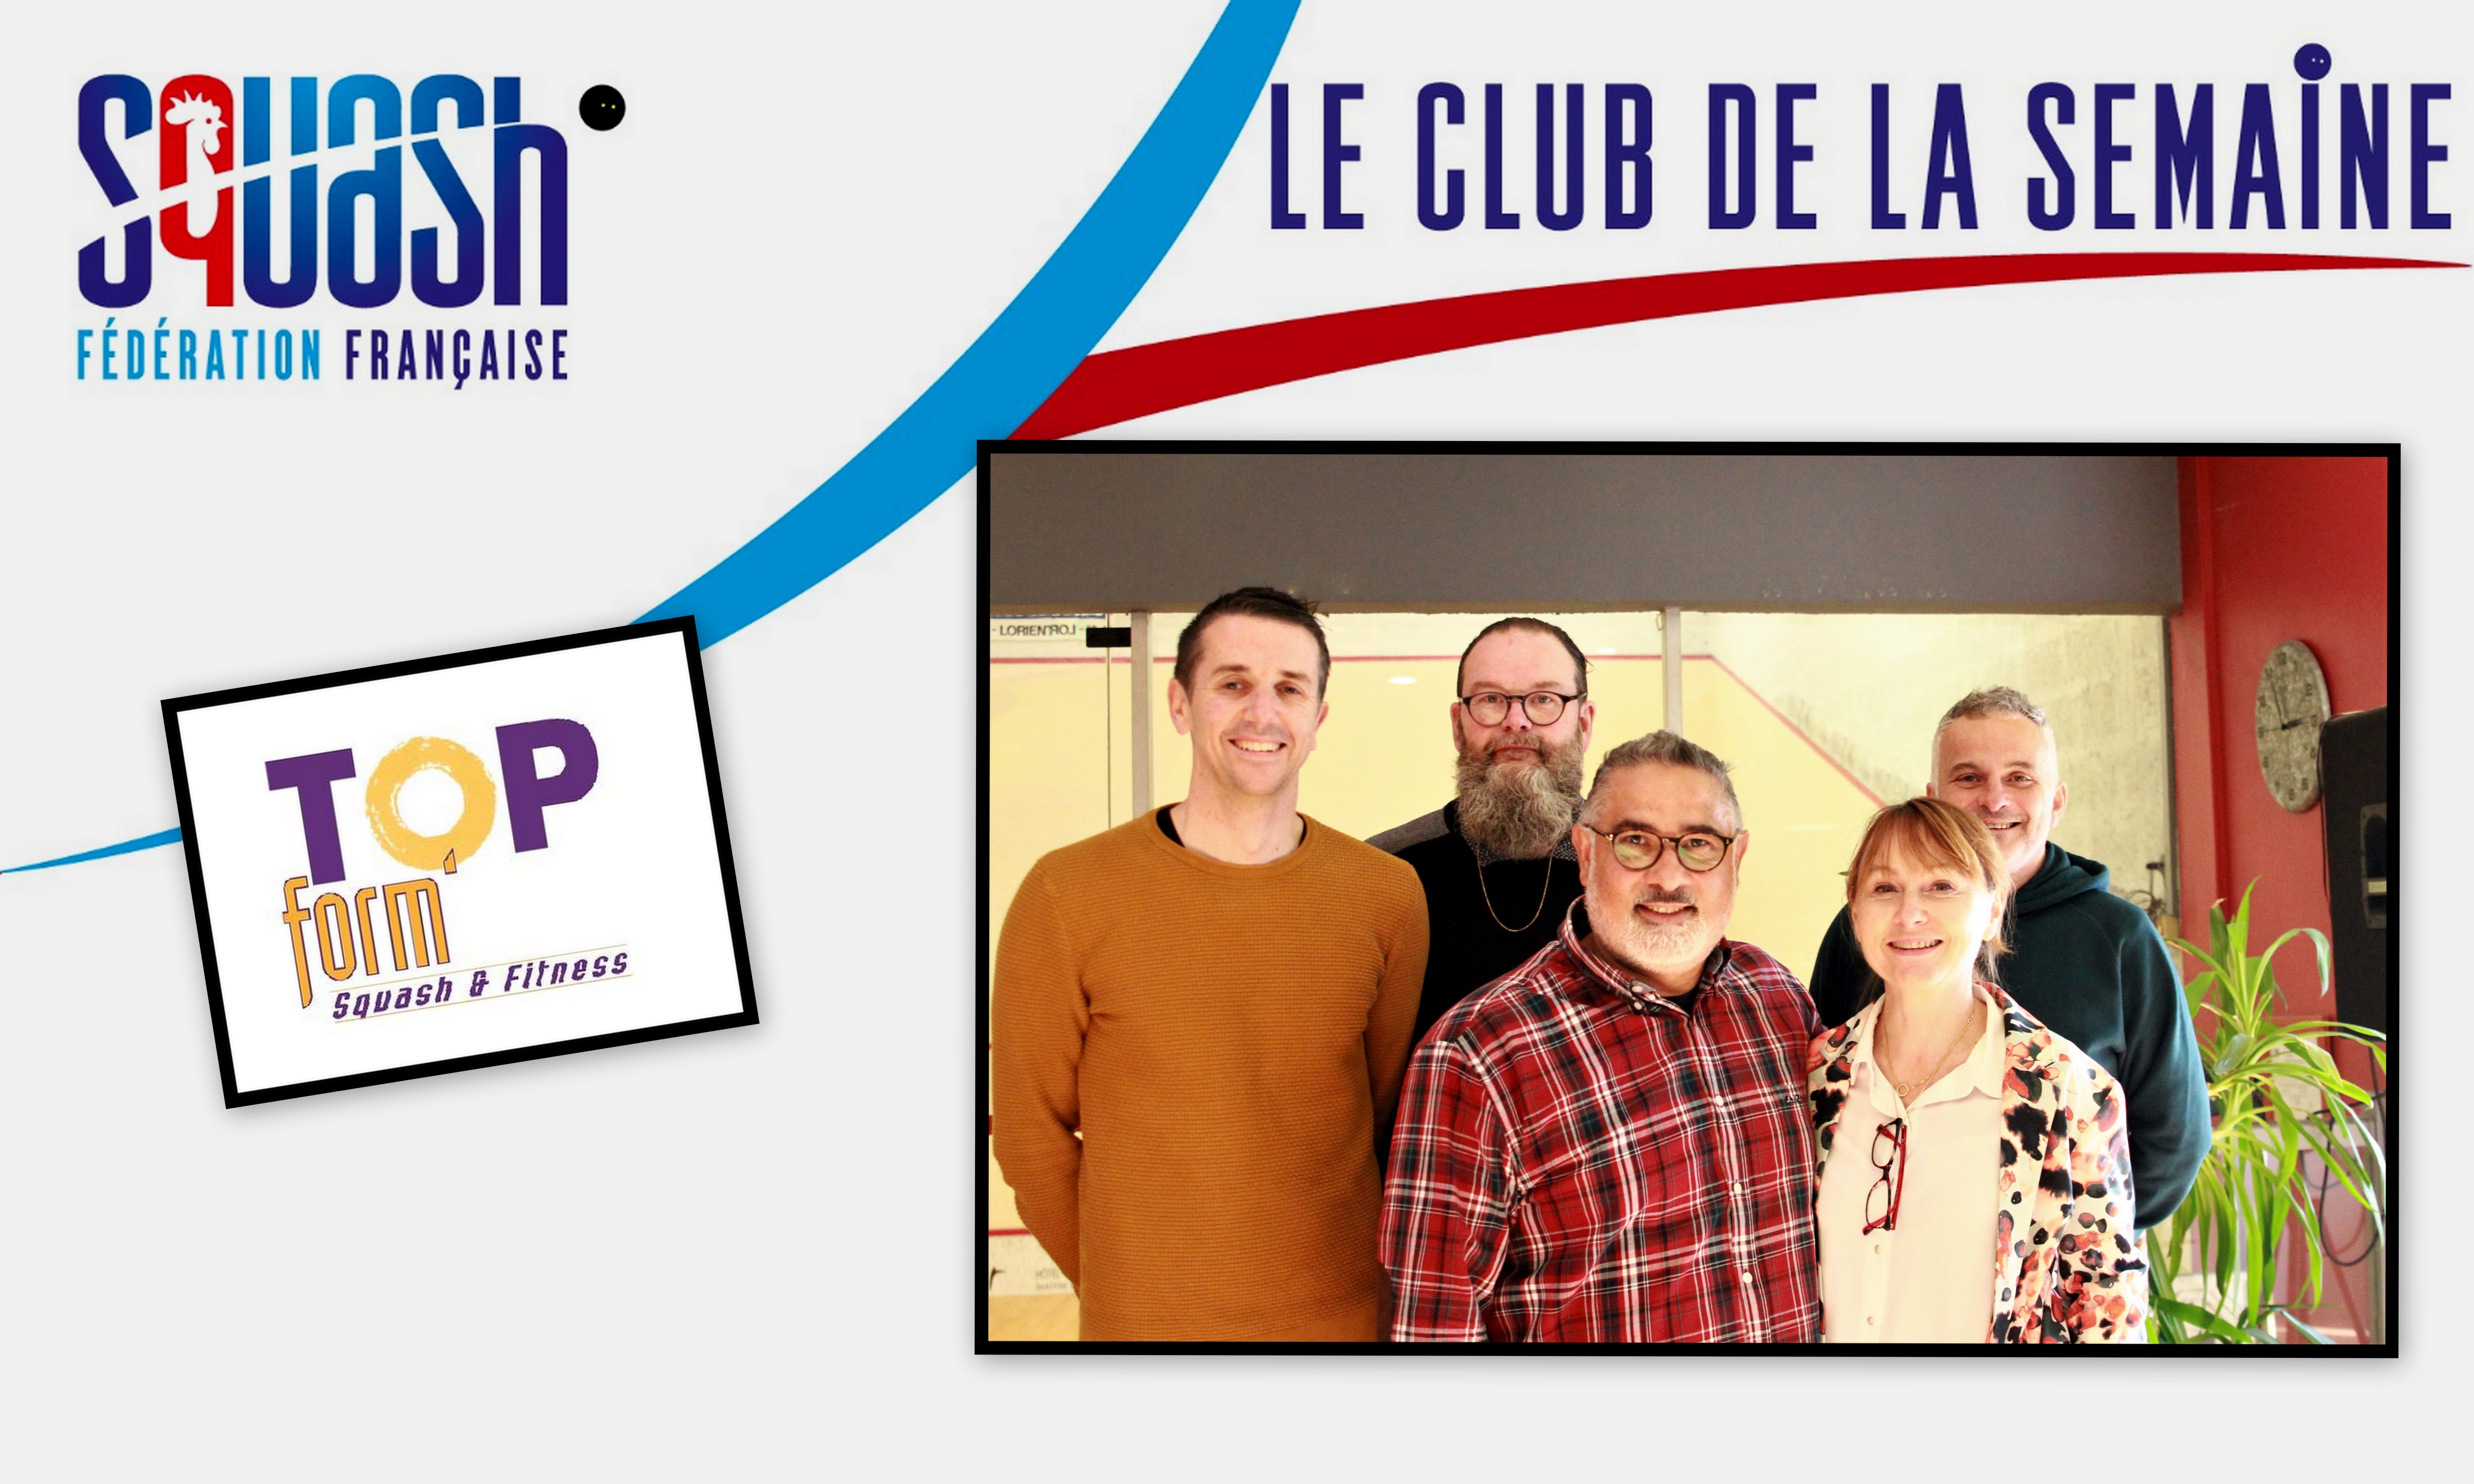 LE CLUB DE LA SEMAINE : TOP FORM' SQUASH & FITNESS (LORIENT)